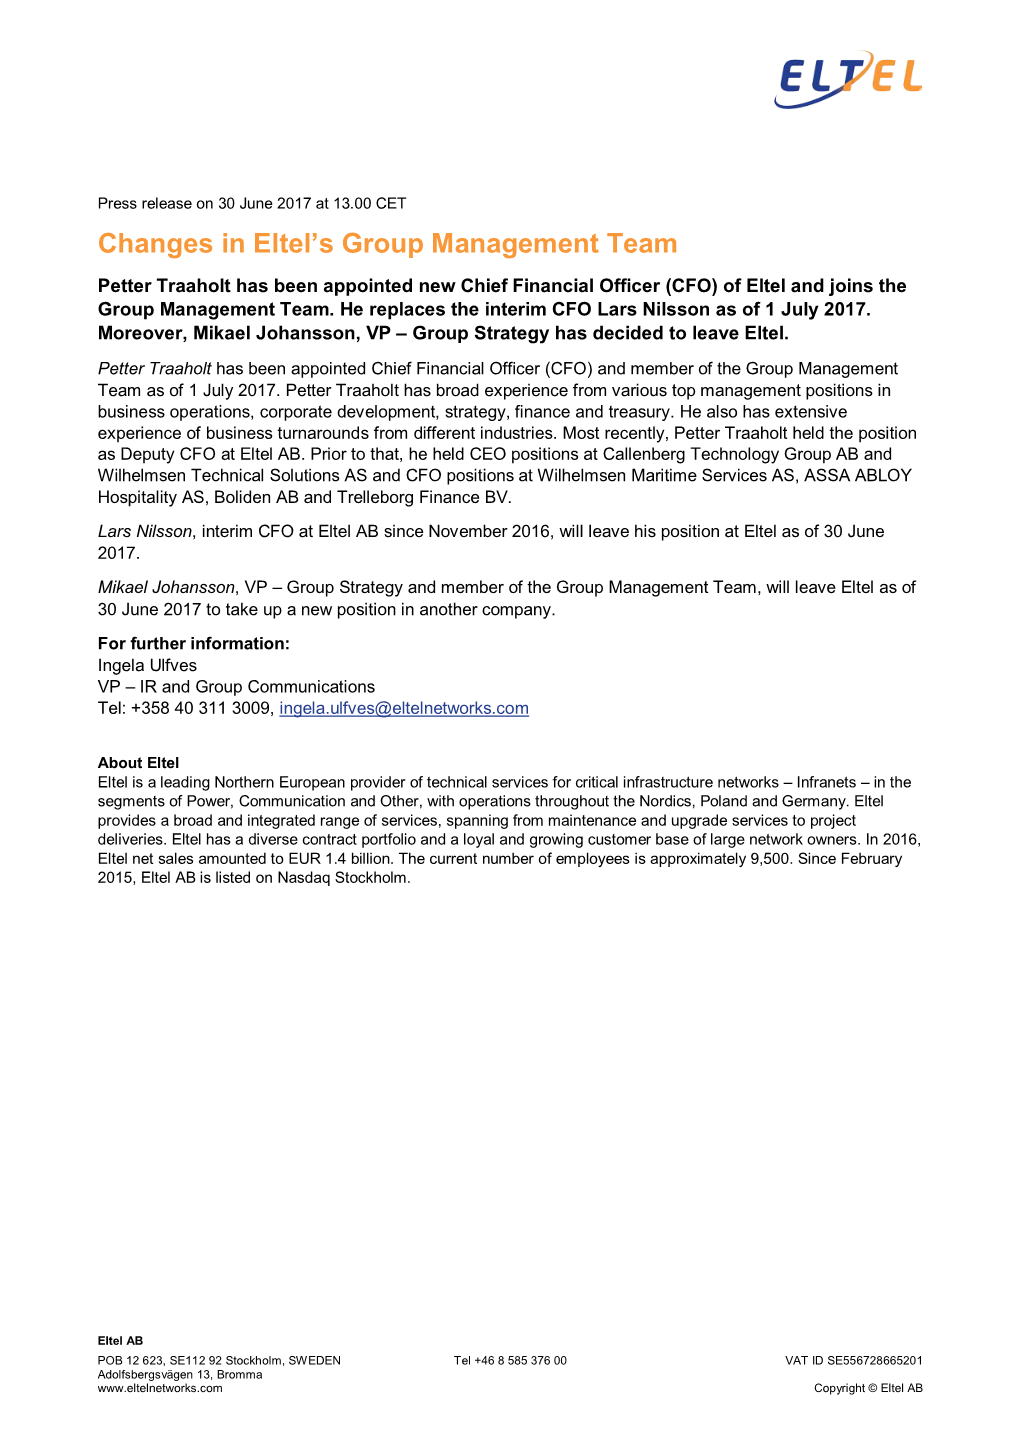 Changes in Eltel's Group Management Team